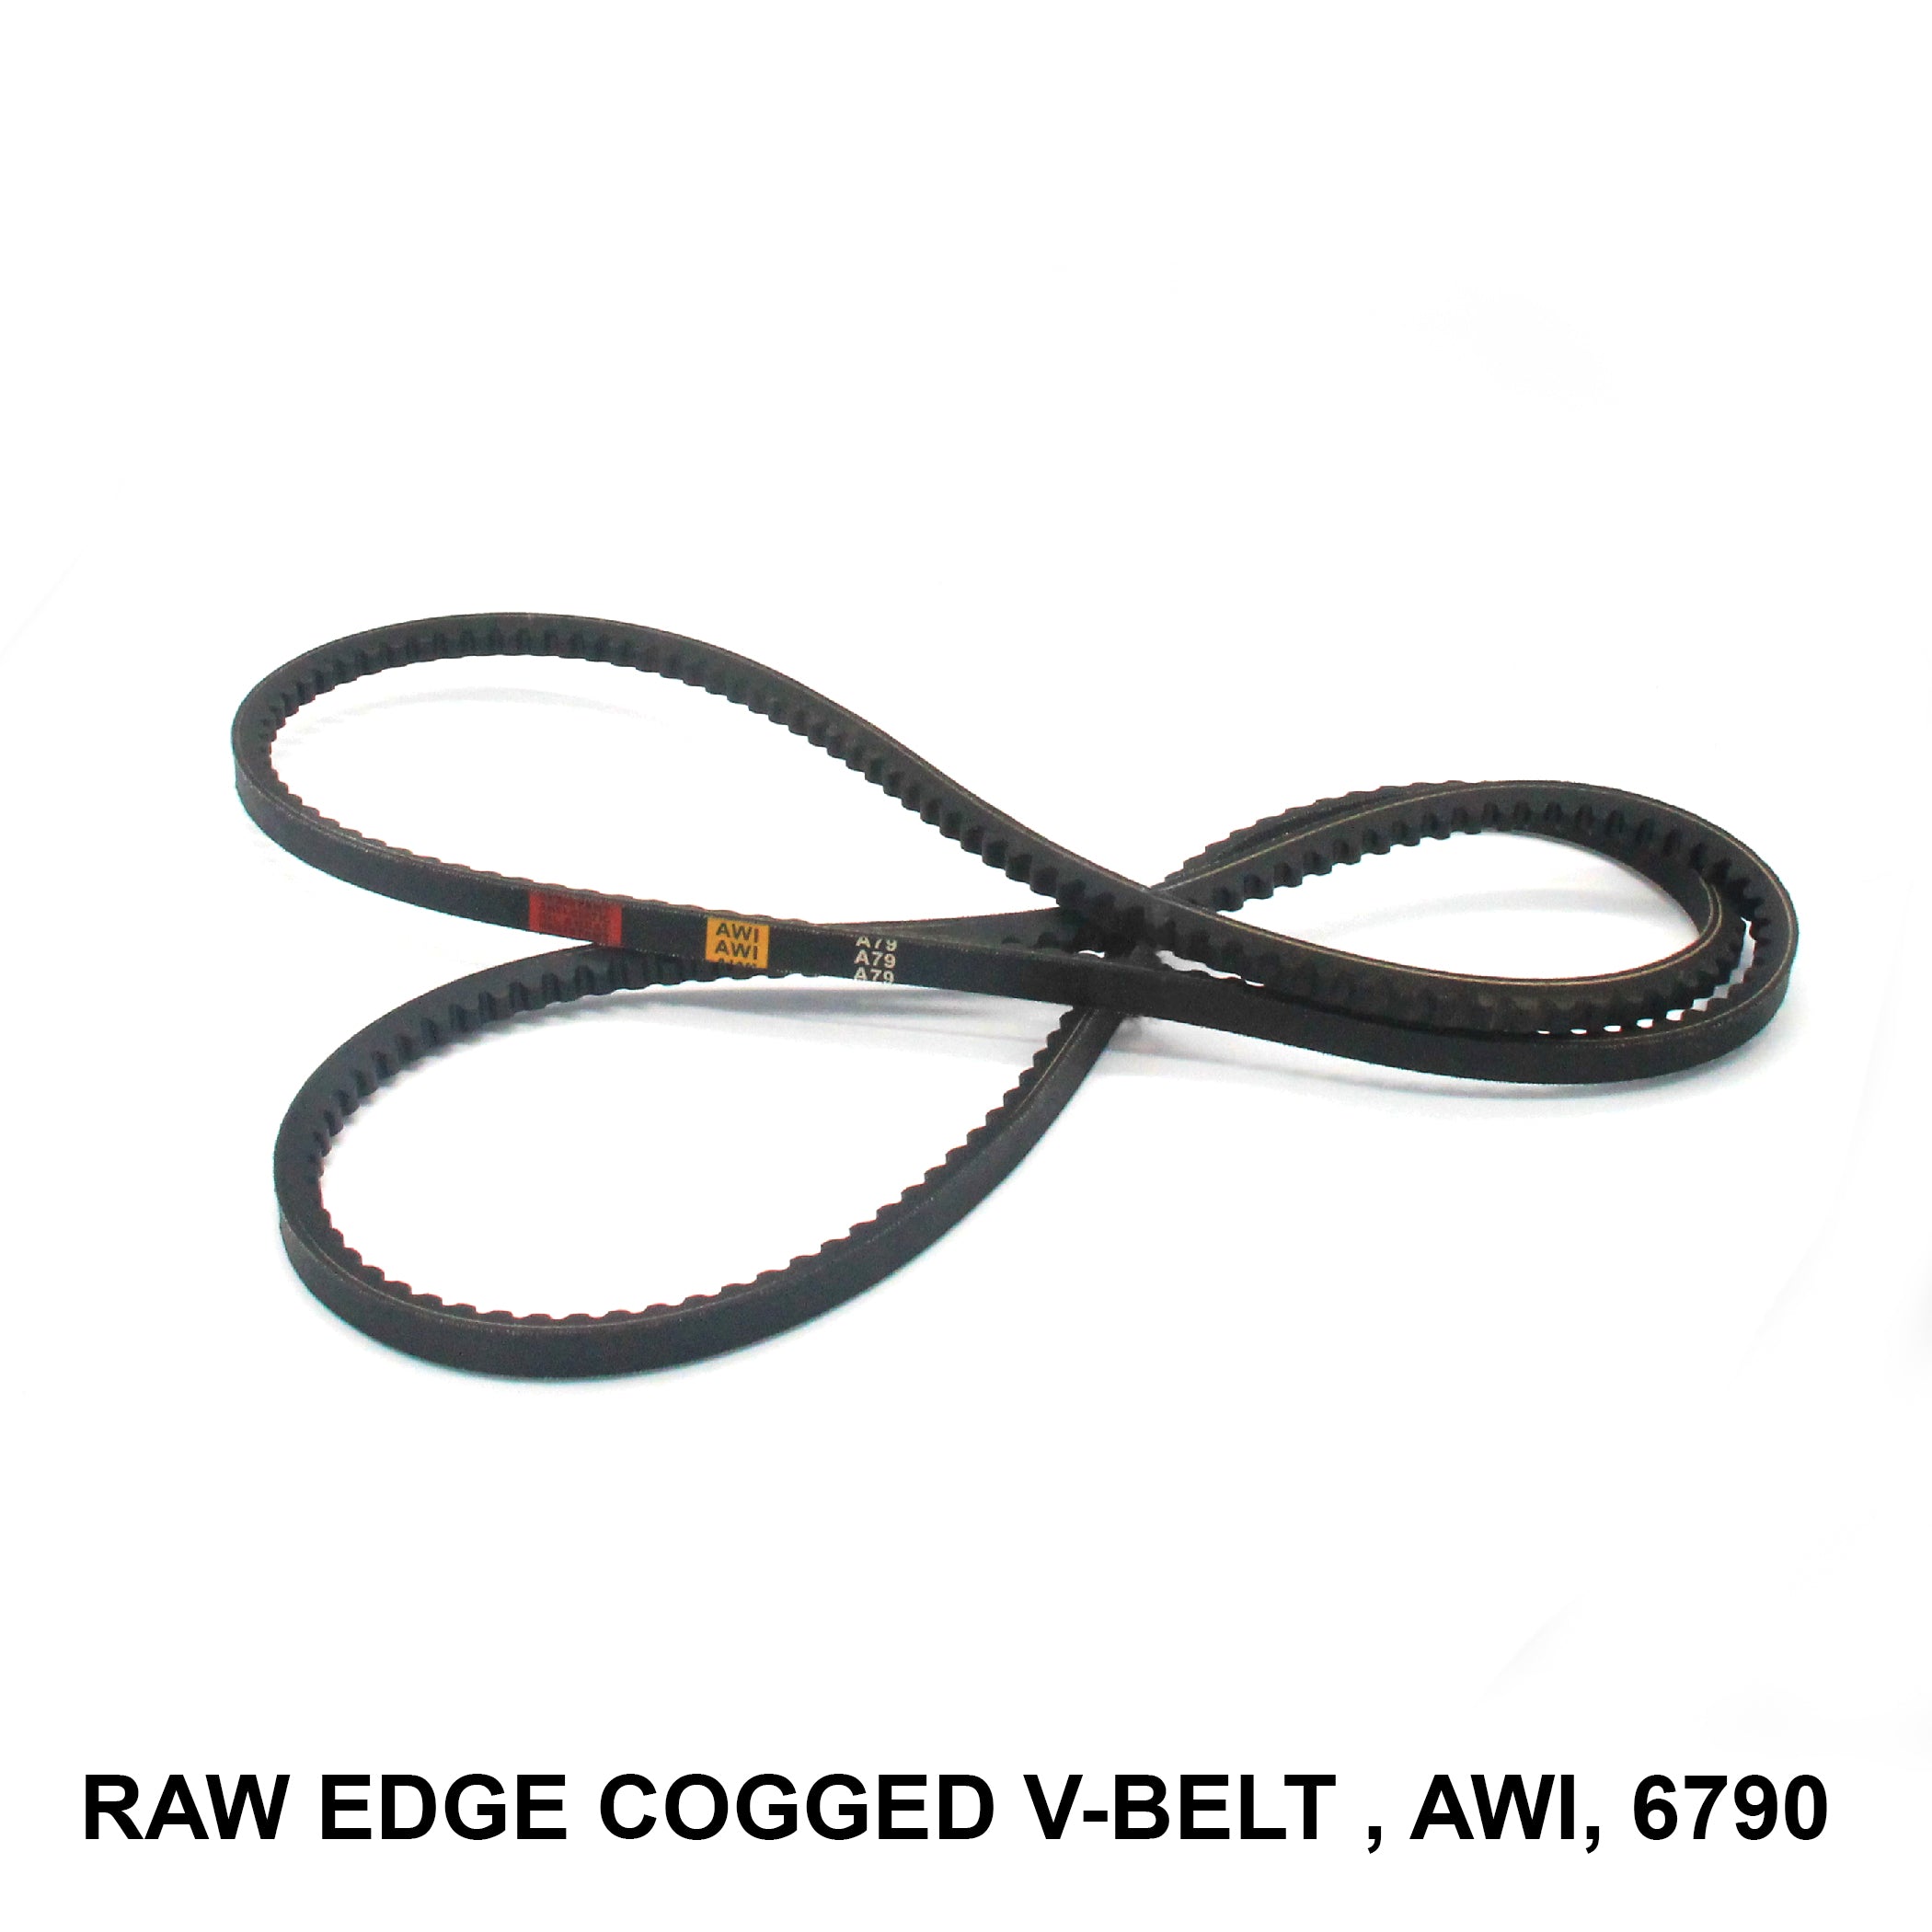 สายพานตัว V Raw Edge Cogged สำหรับ AWI พร้อมรหัสผลิตภัณฑ์ RECMF-6790 (006747)